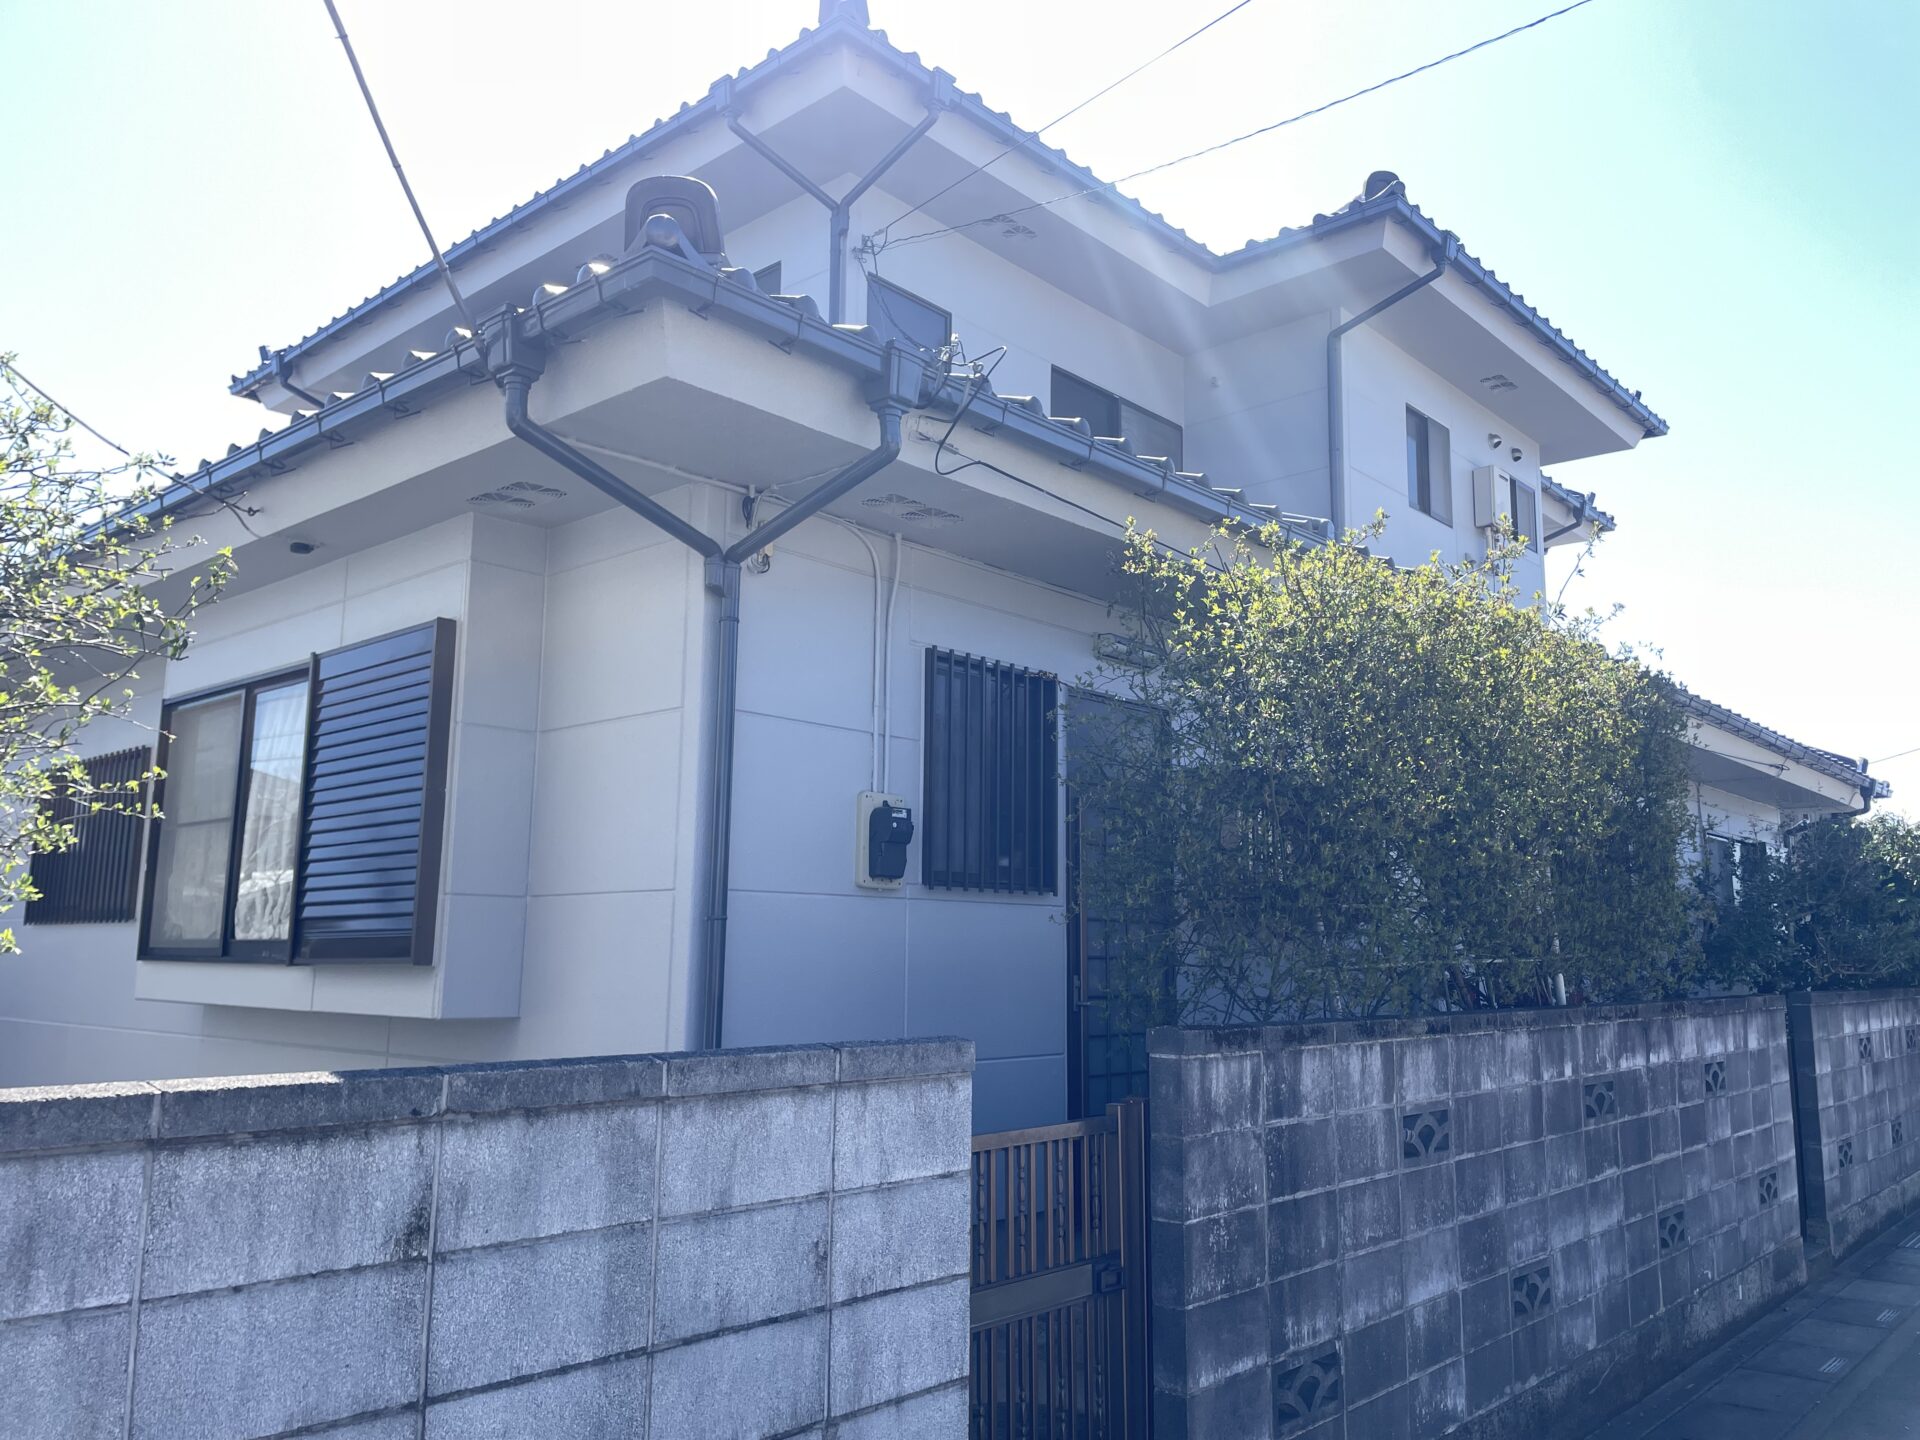 埼玉県川越市で母屋の外壁と倉庫をグレー色で統一して落ち着いた雰囲気のお家になりました。施工後